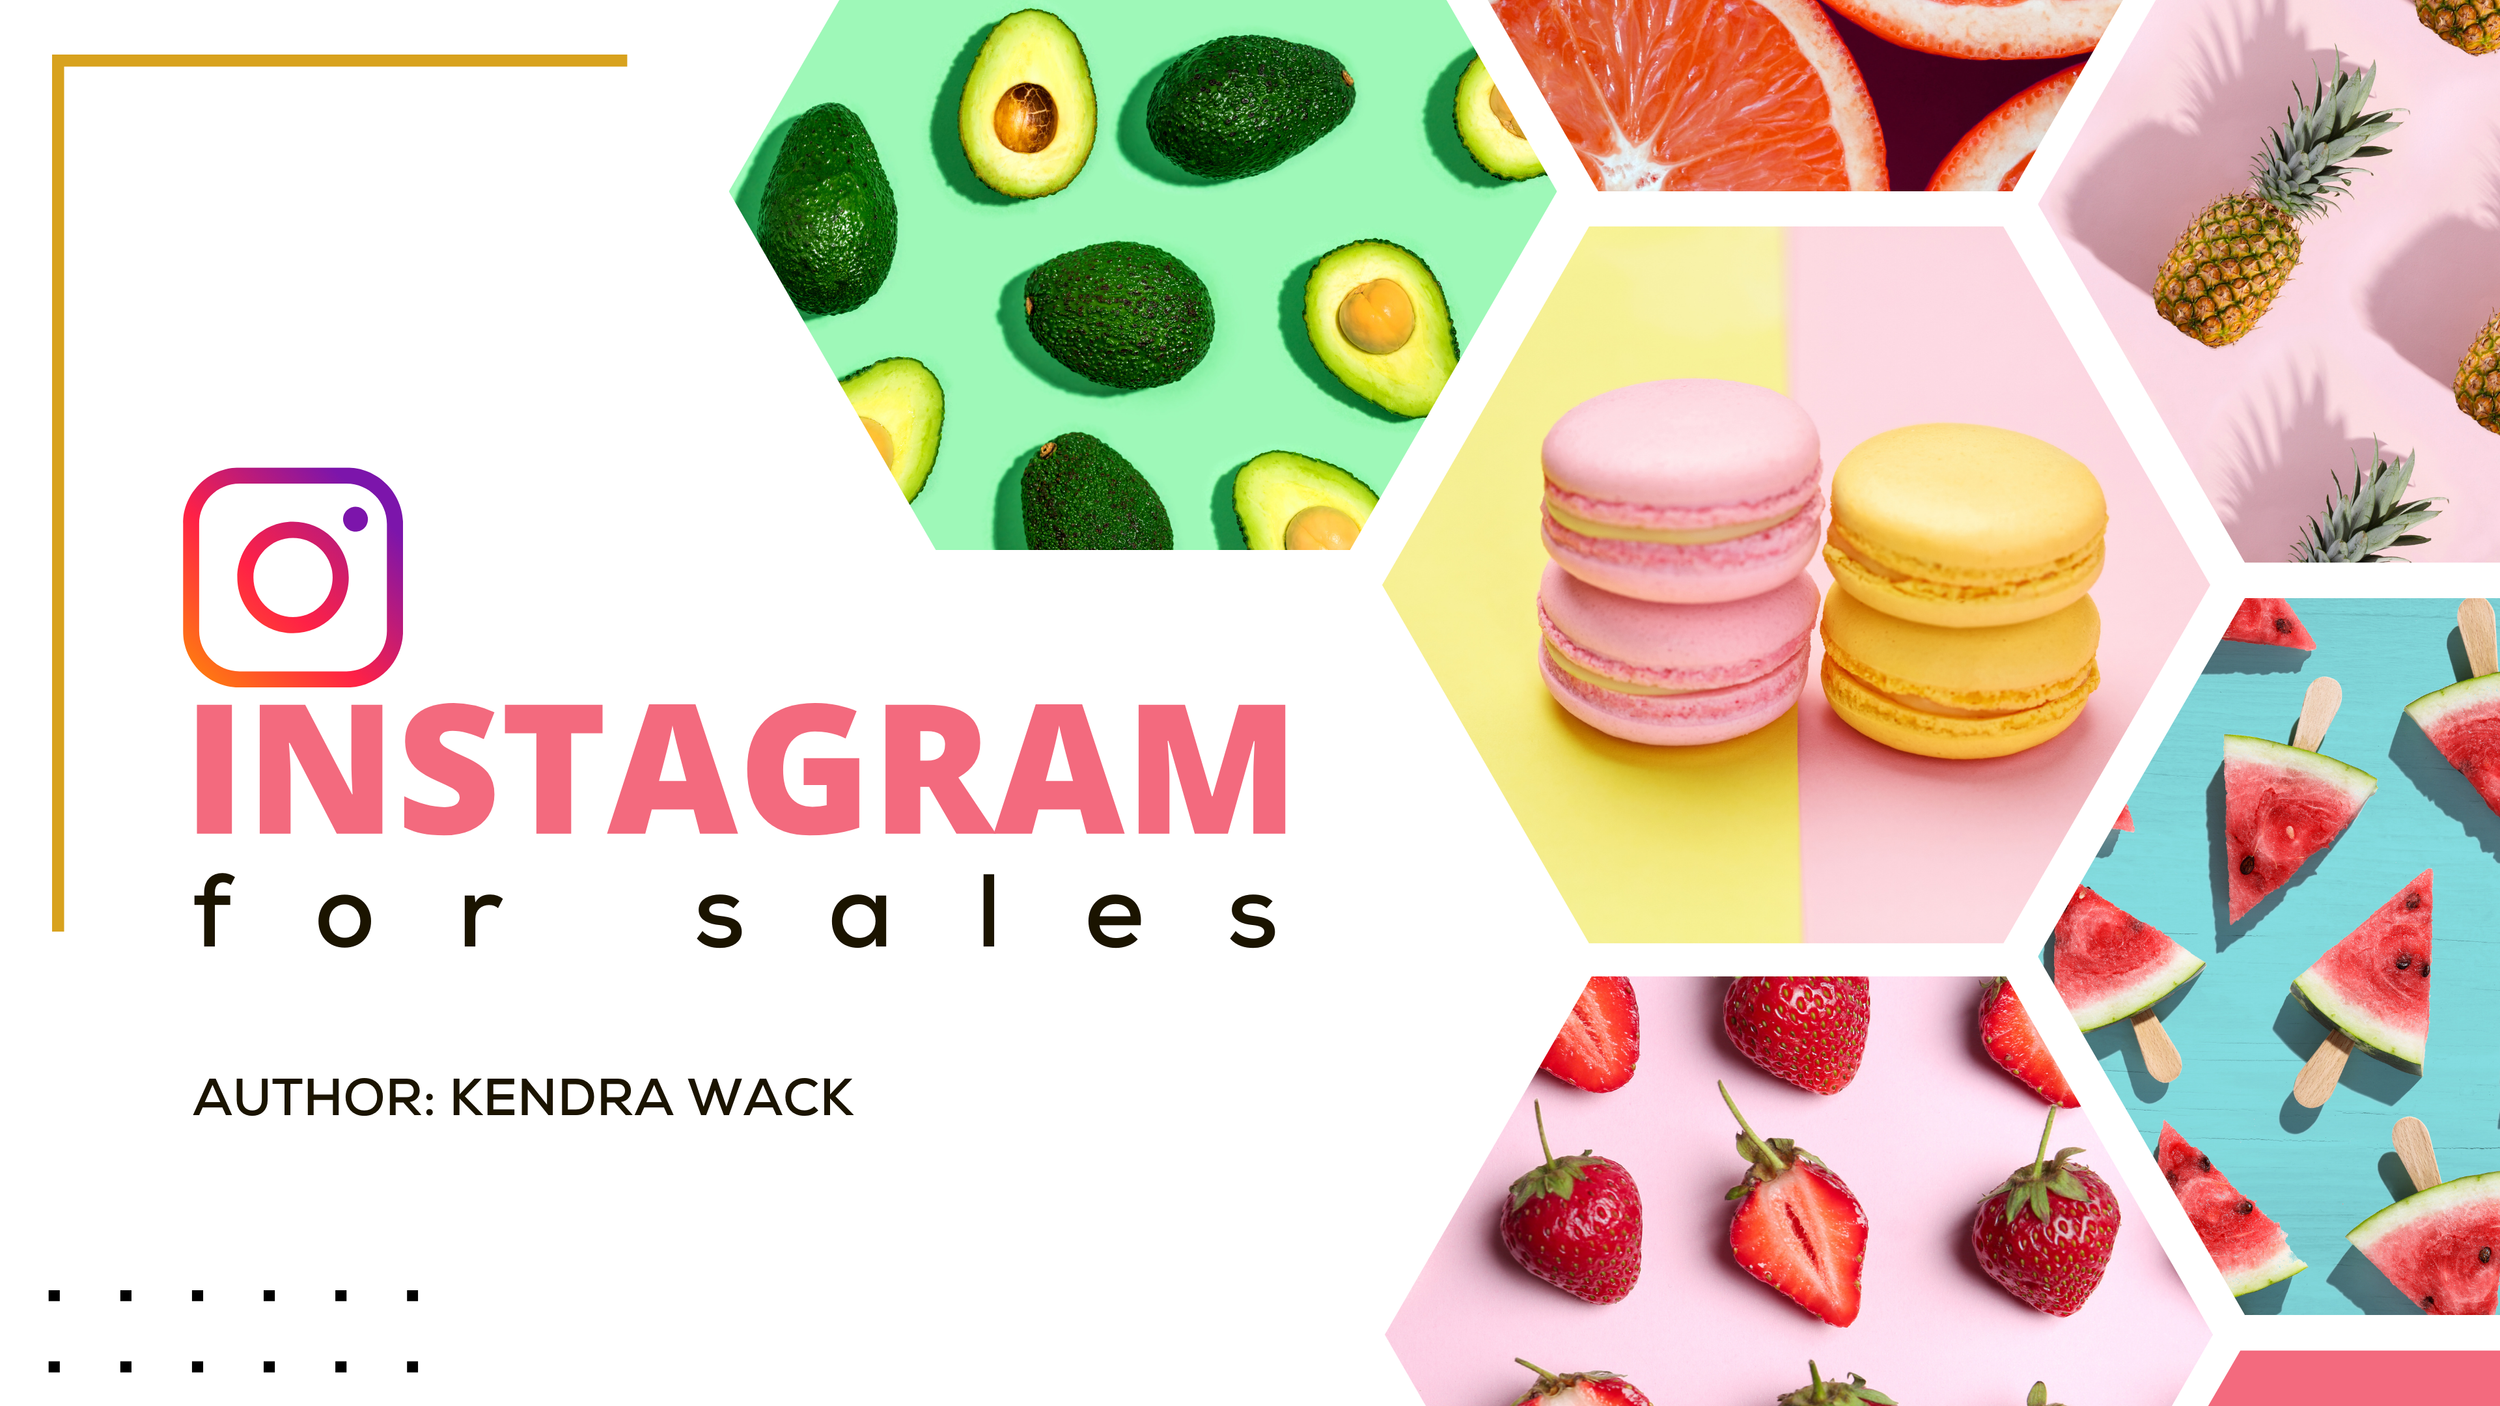 Tirer parti d'Instagram pour la croissance des entreprises du secteur alimentaire